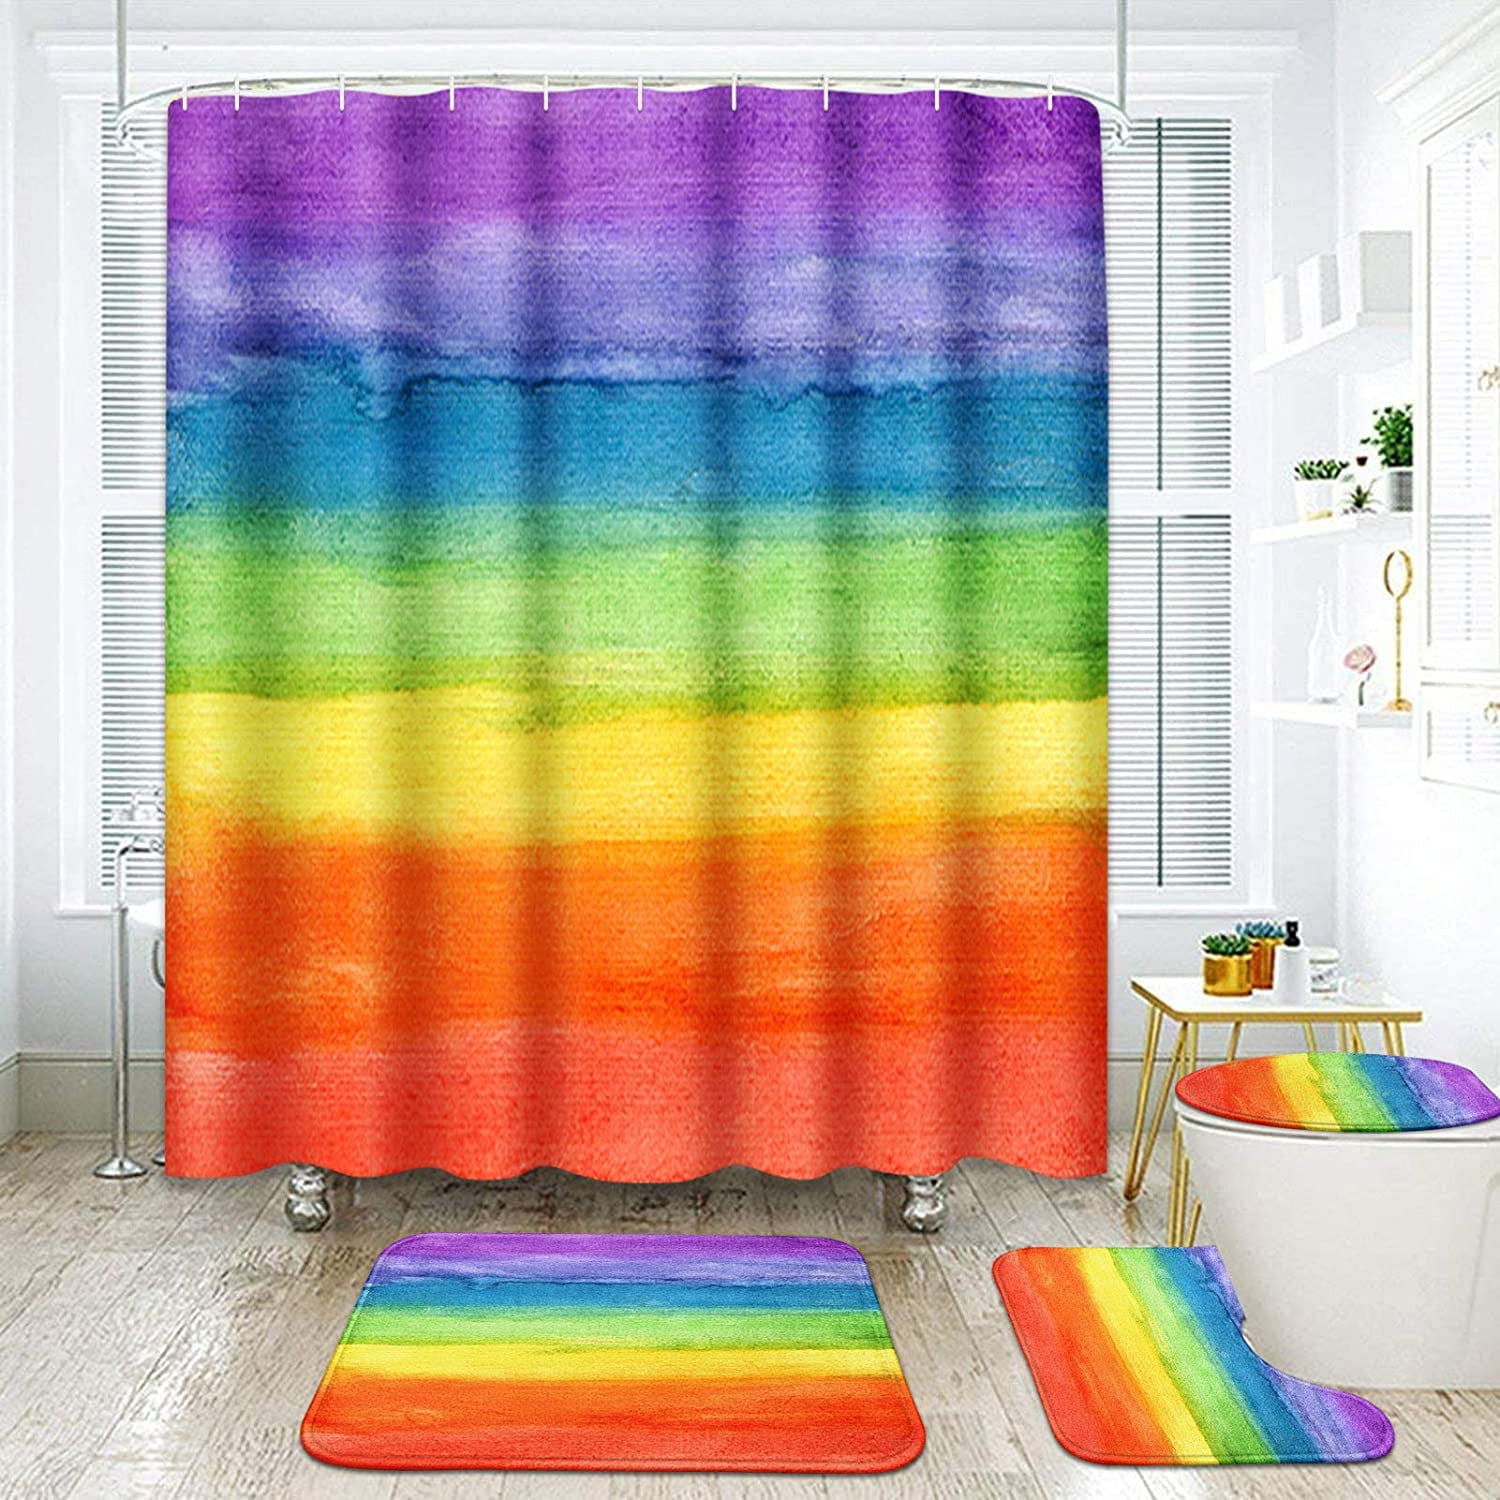 Beach and rainbow Shower Curtain Bathroom Decor Fabric  & 12hooks 71*71inches 